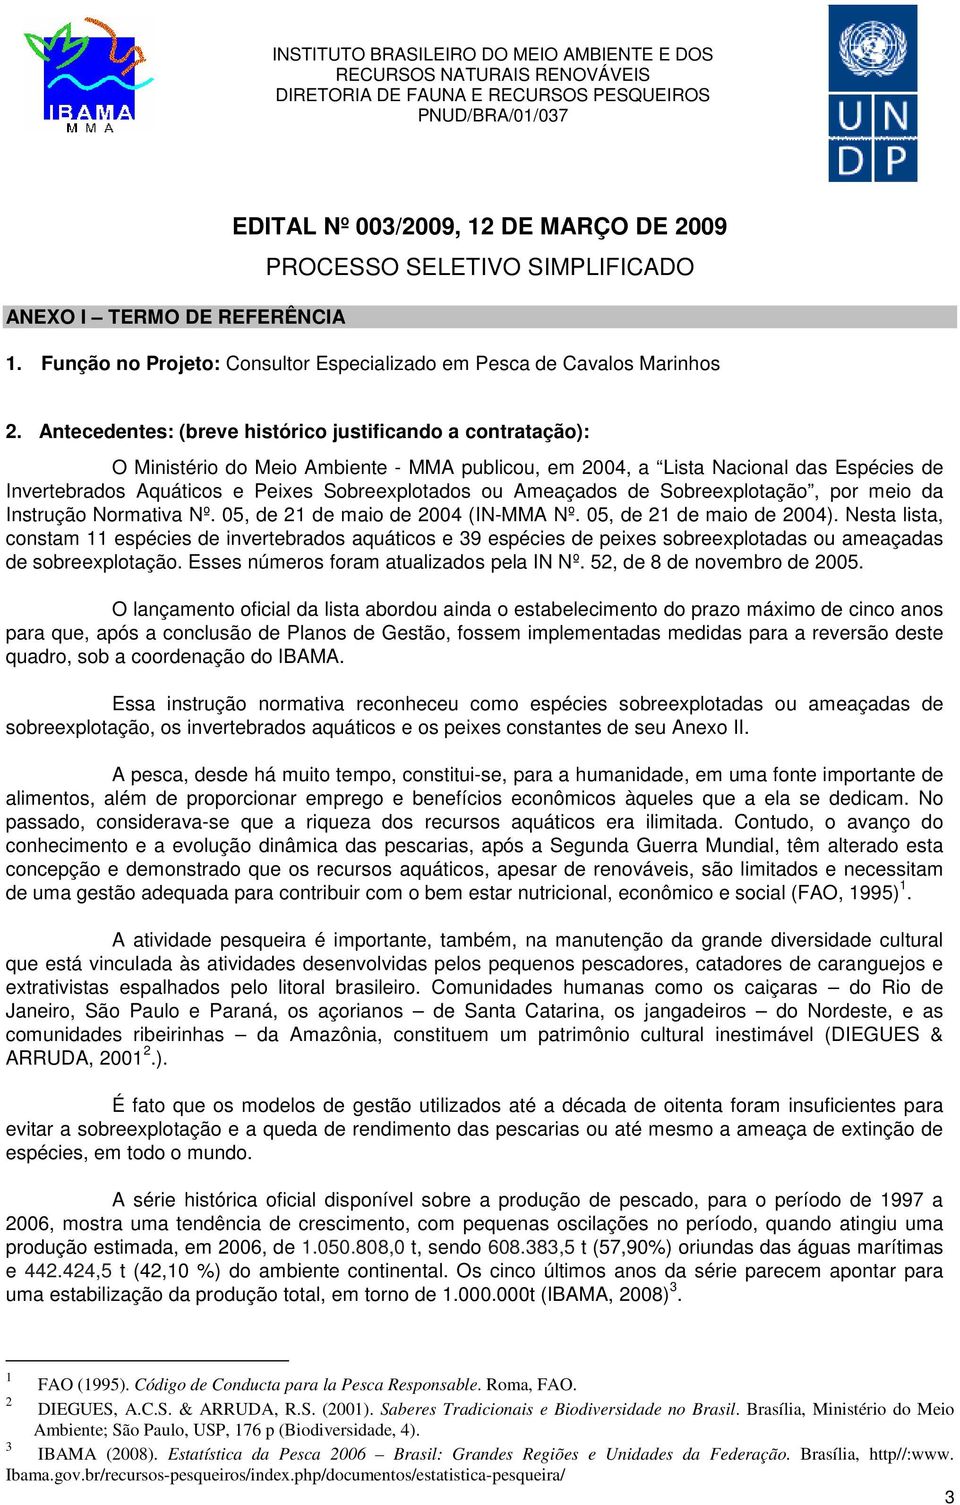 Ameaçados de Sobreexplotação, por meio da Instrução Normativa Nº. 05, de 21 de maio de 2004 (IN-MMA Nº. 05, de 21 de maio de 2004).